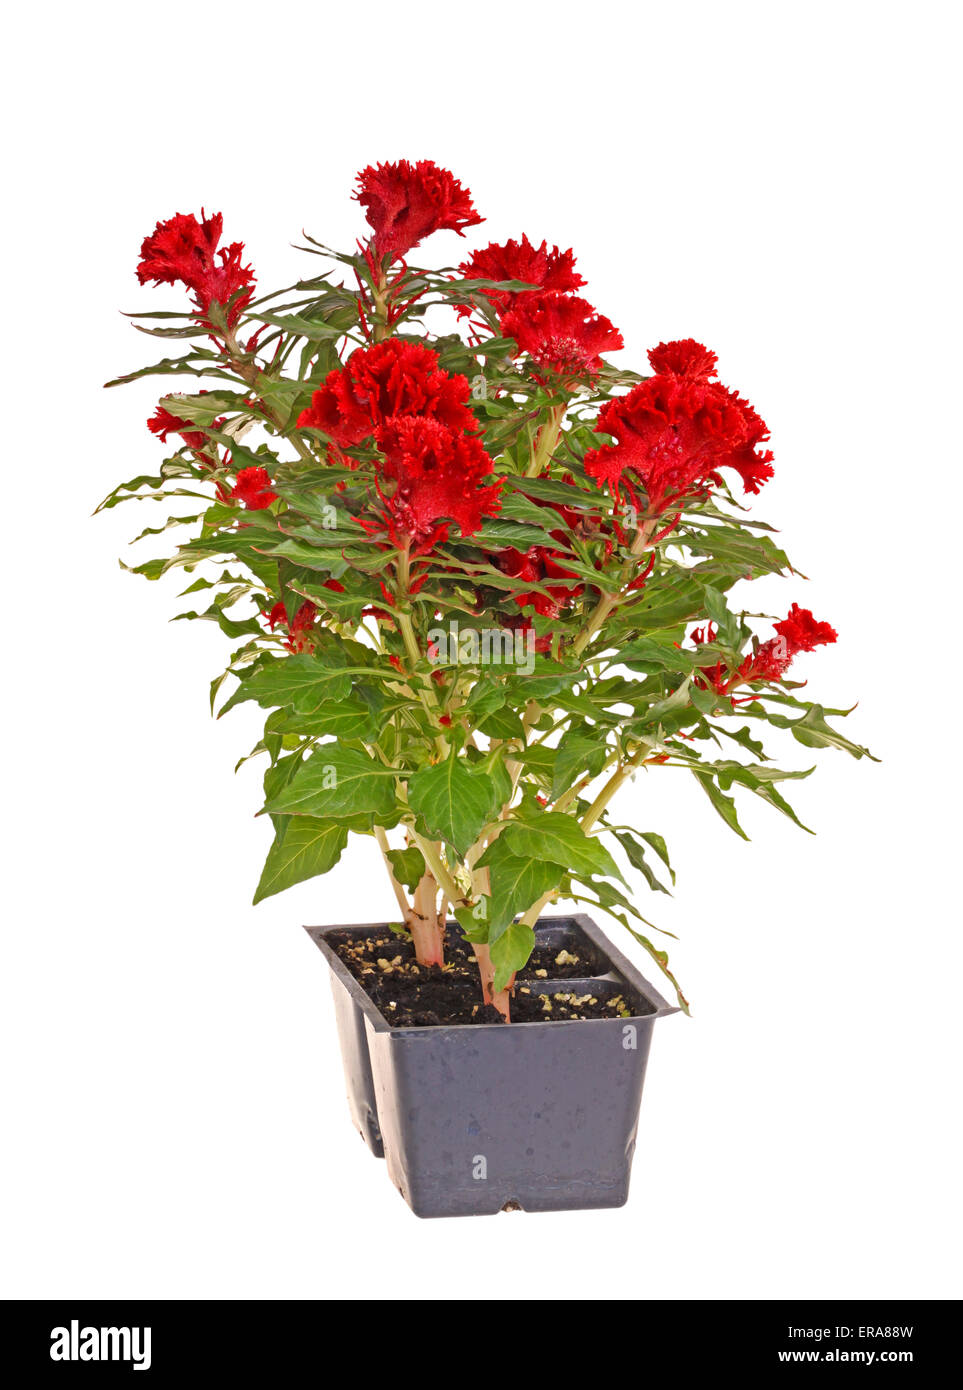 Fleur rouge celosia (cockscomb) prêt pour la transplantation Banque D'Images